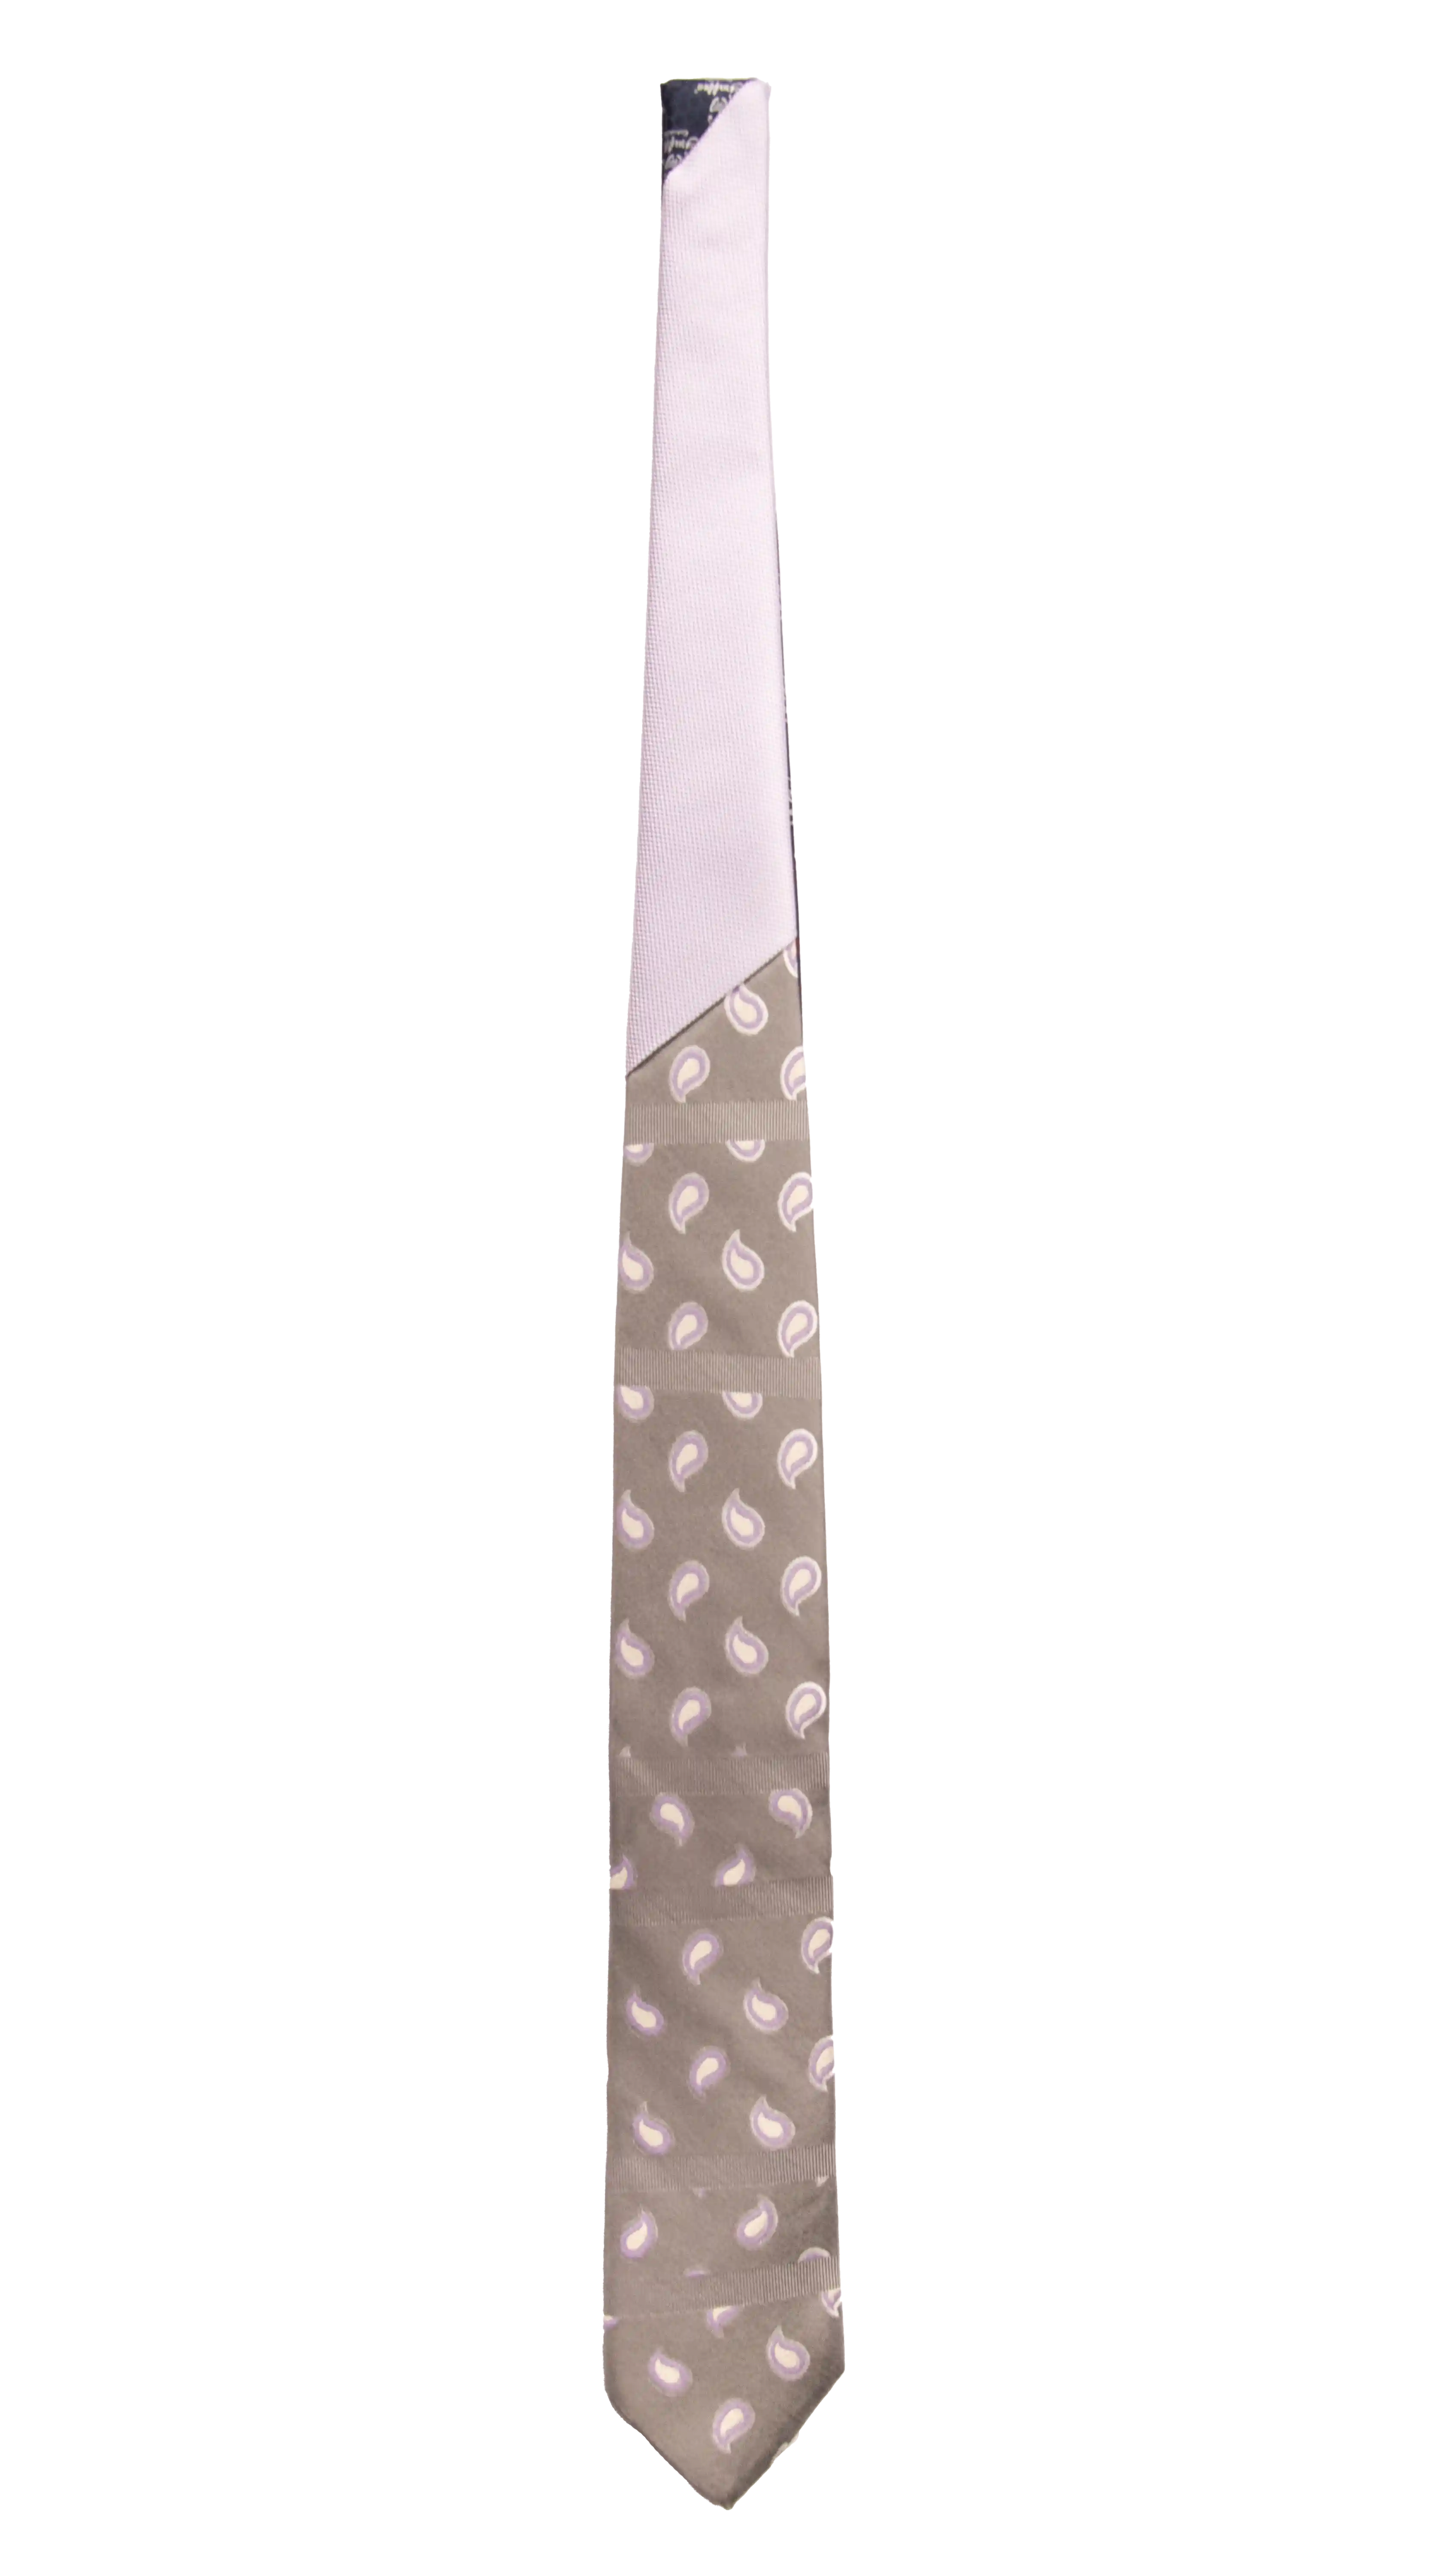 Cravatta Grigia Paisley Lilla Bianco Nodo in Contrasto Glicine Made in Italy Graffeo Cravatte Intera